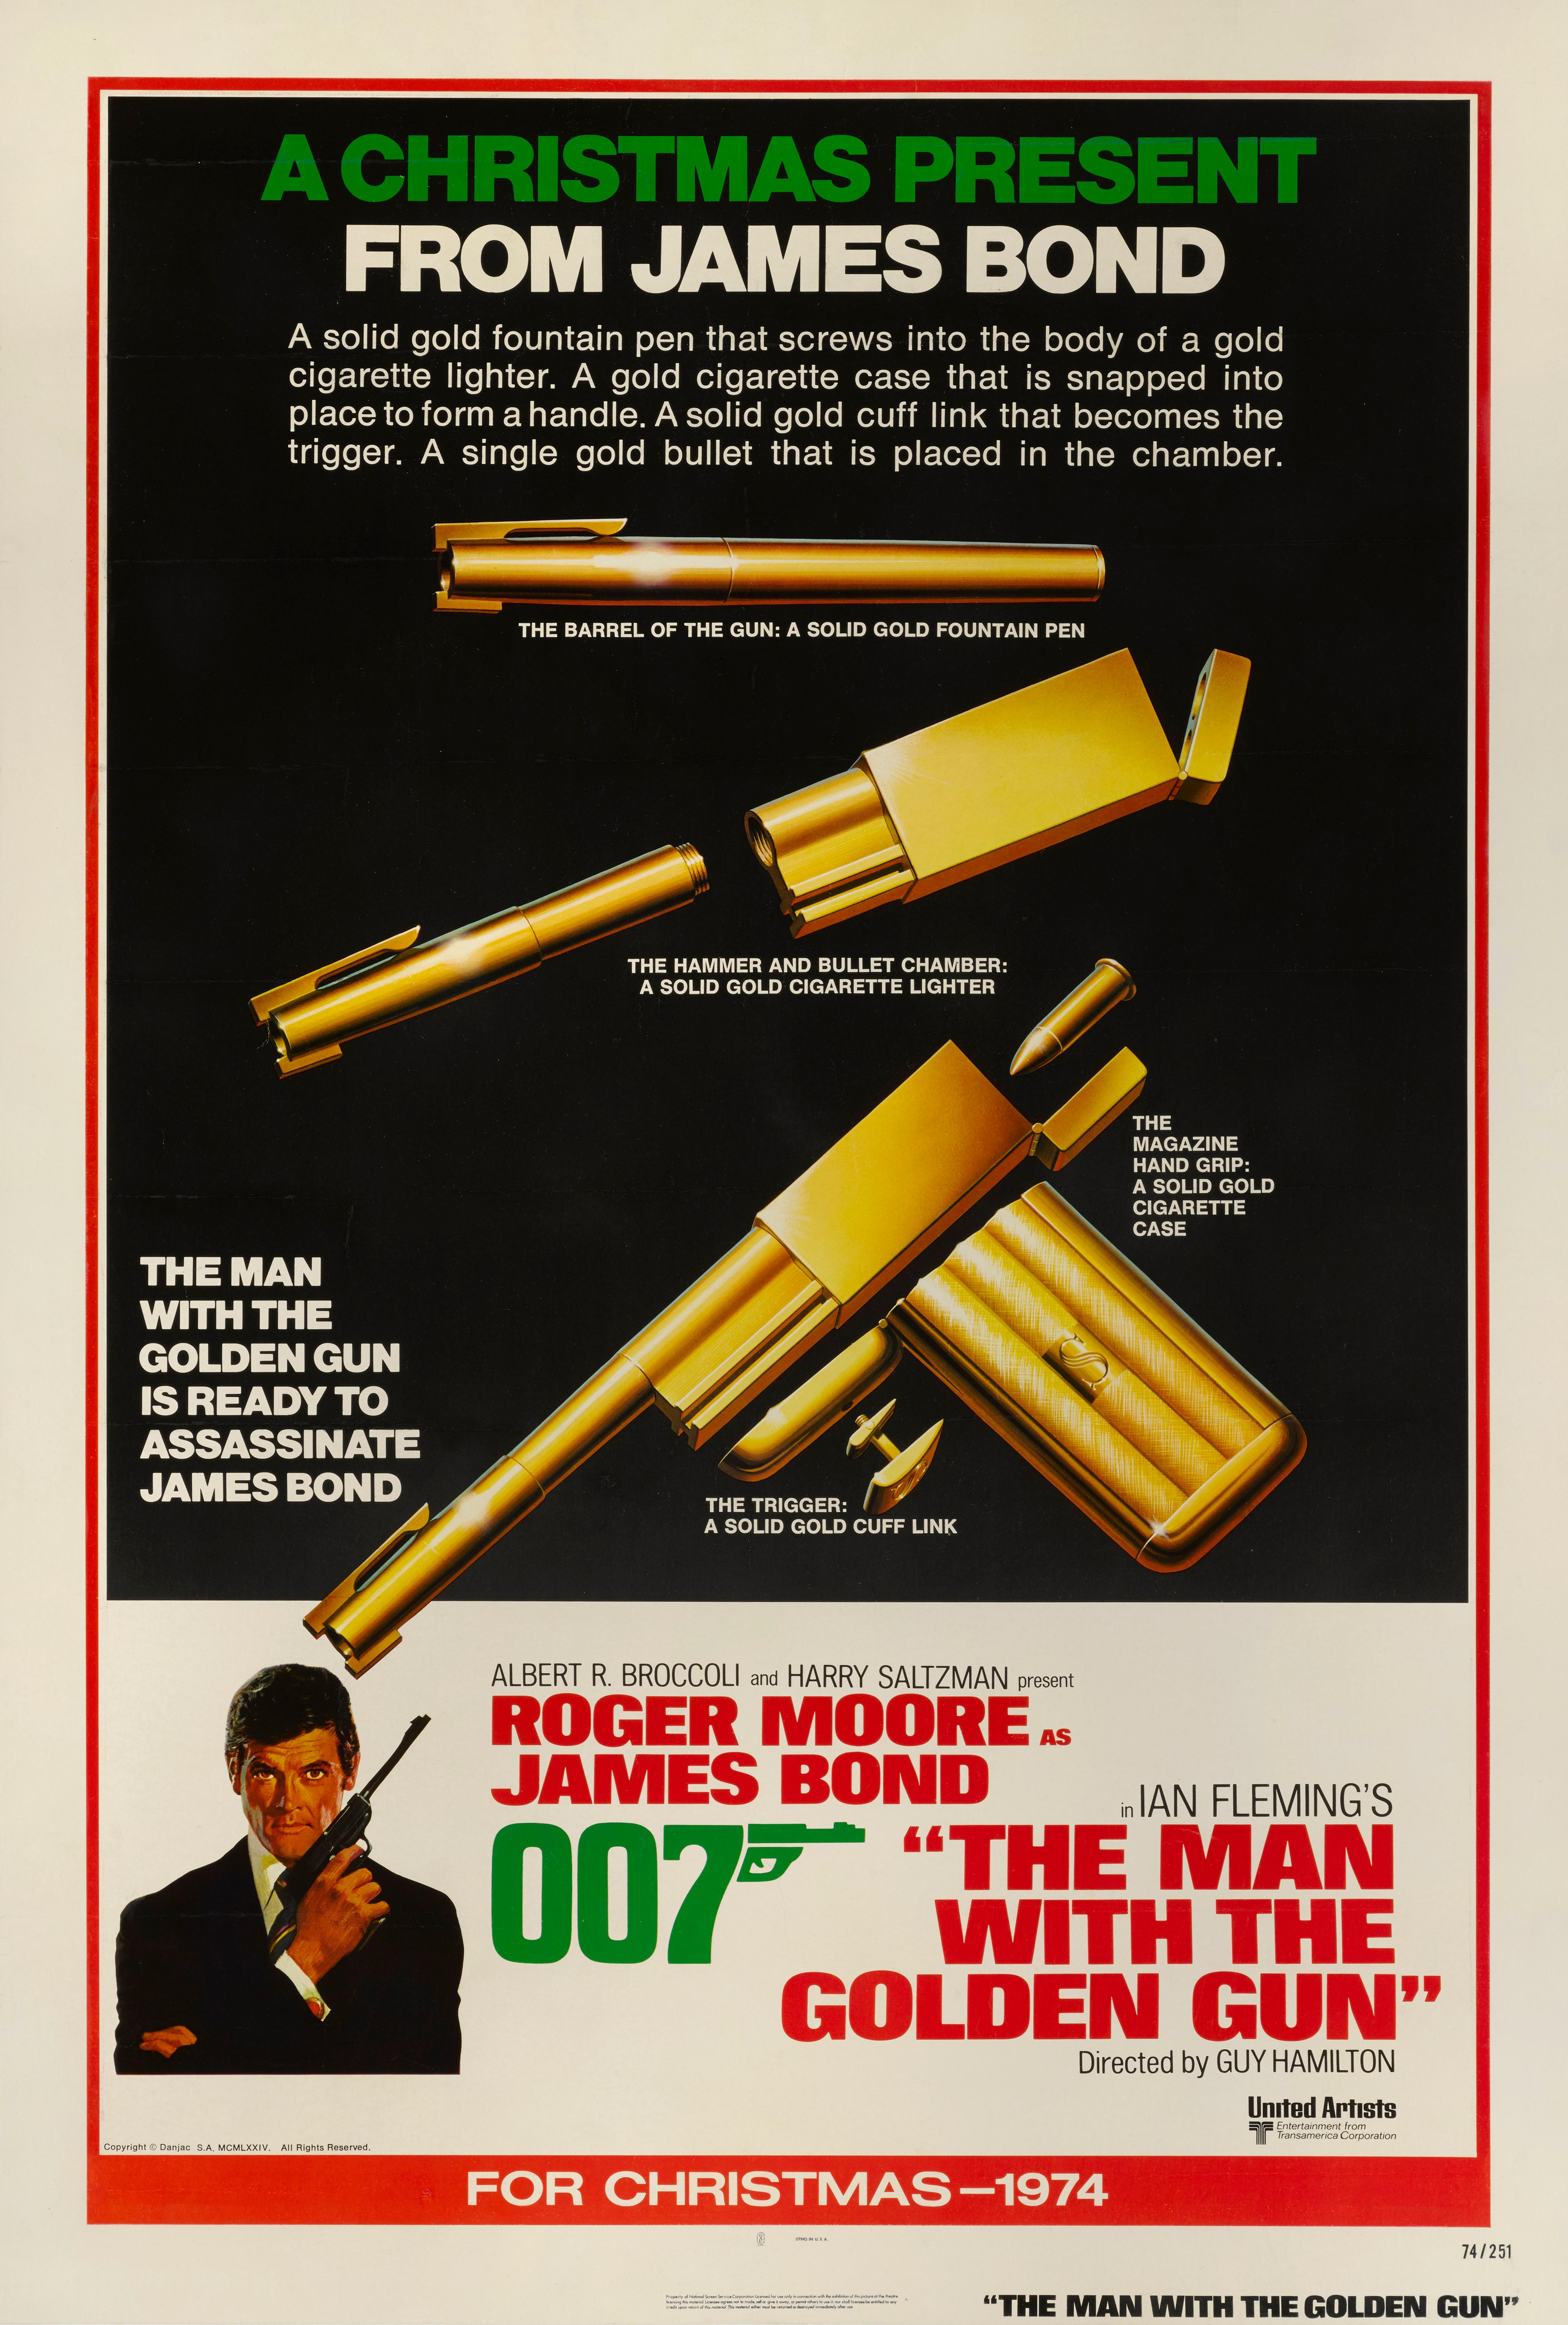 Original US Style Christmas advance style Filmplakat für den Film The Man with the Golden Gun von 1974.
Dies ist das zweite Mal, dass Roger Moore James Bond spielt, und das vierte und letzte Mal, dass Guy Hamilton bei einem Bond-Film Regie führt.